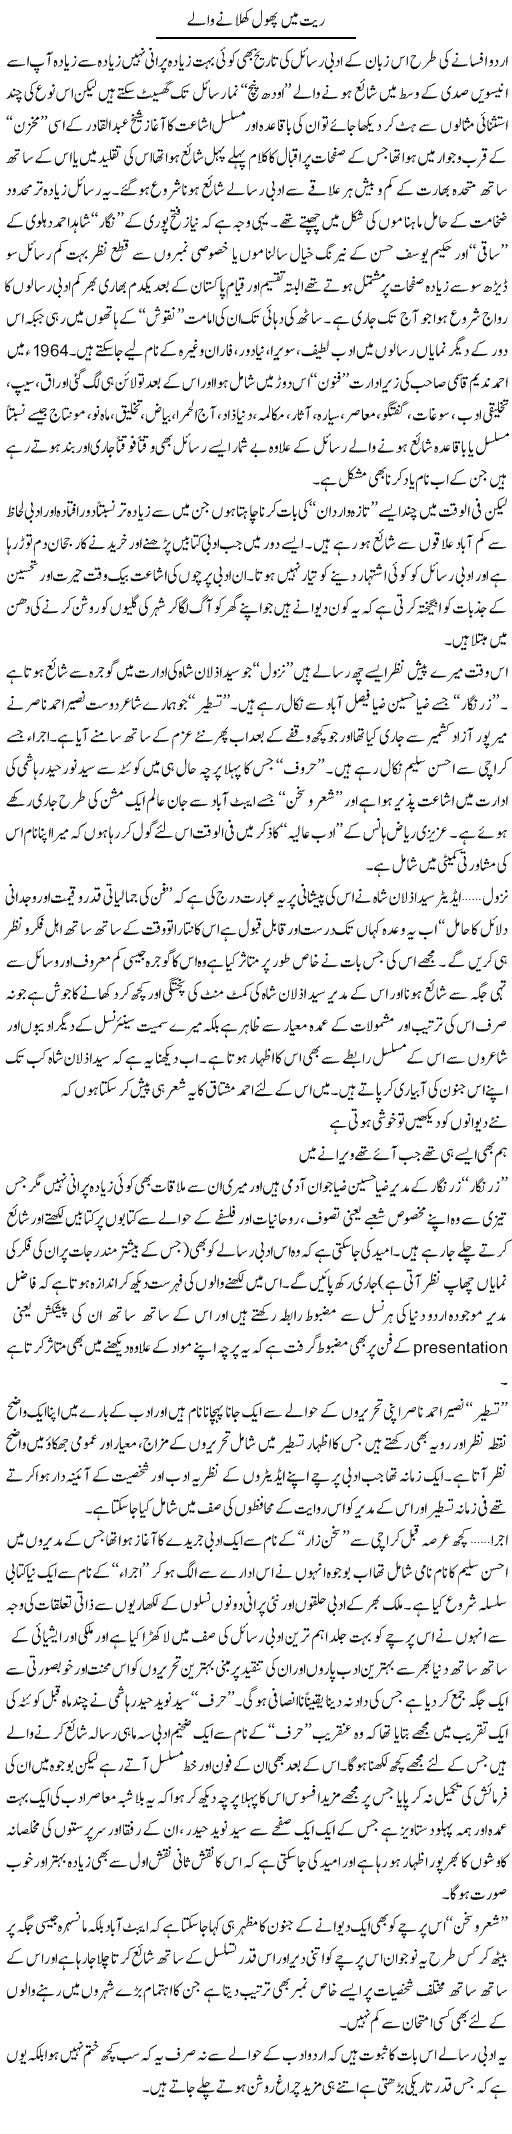 Urdu Adab Express Column Amjad Islam 23 January 2011